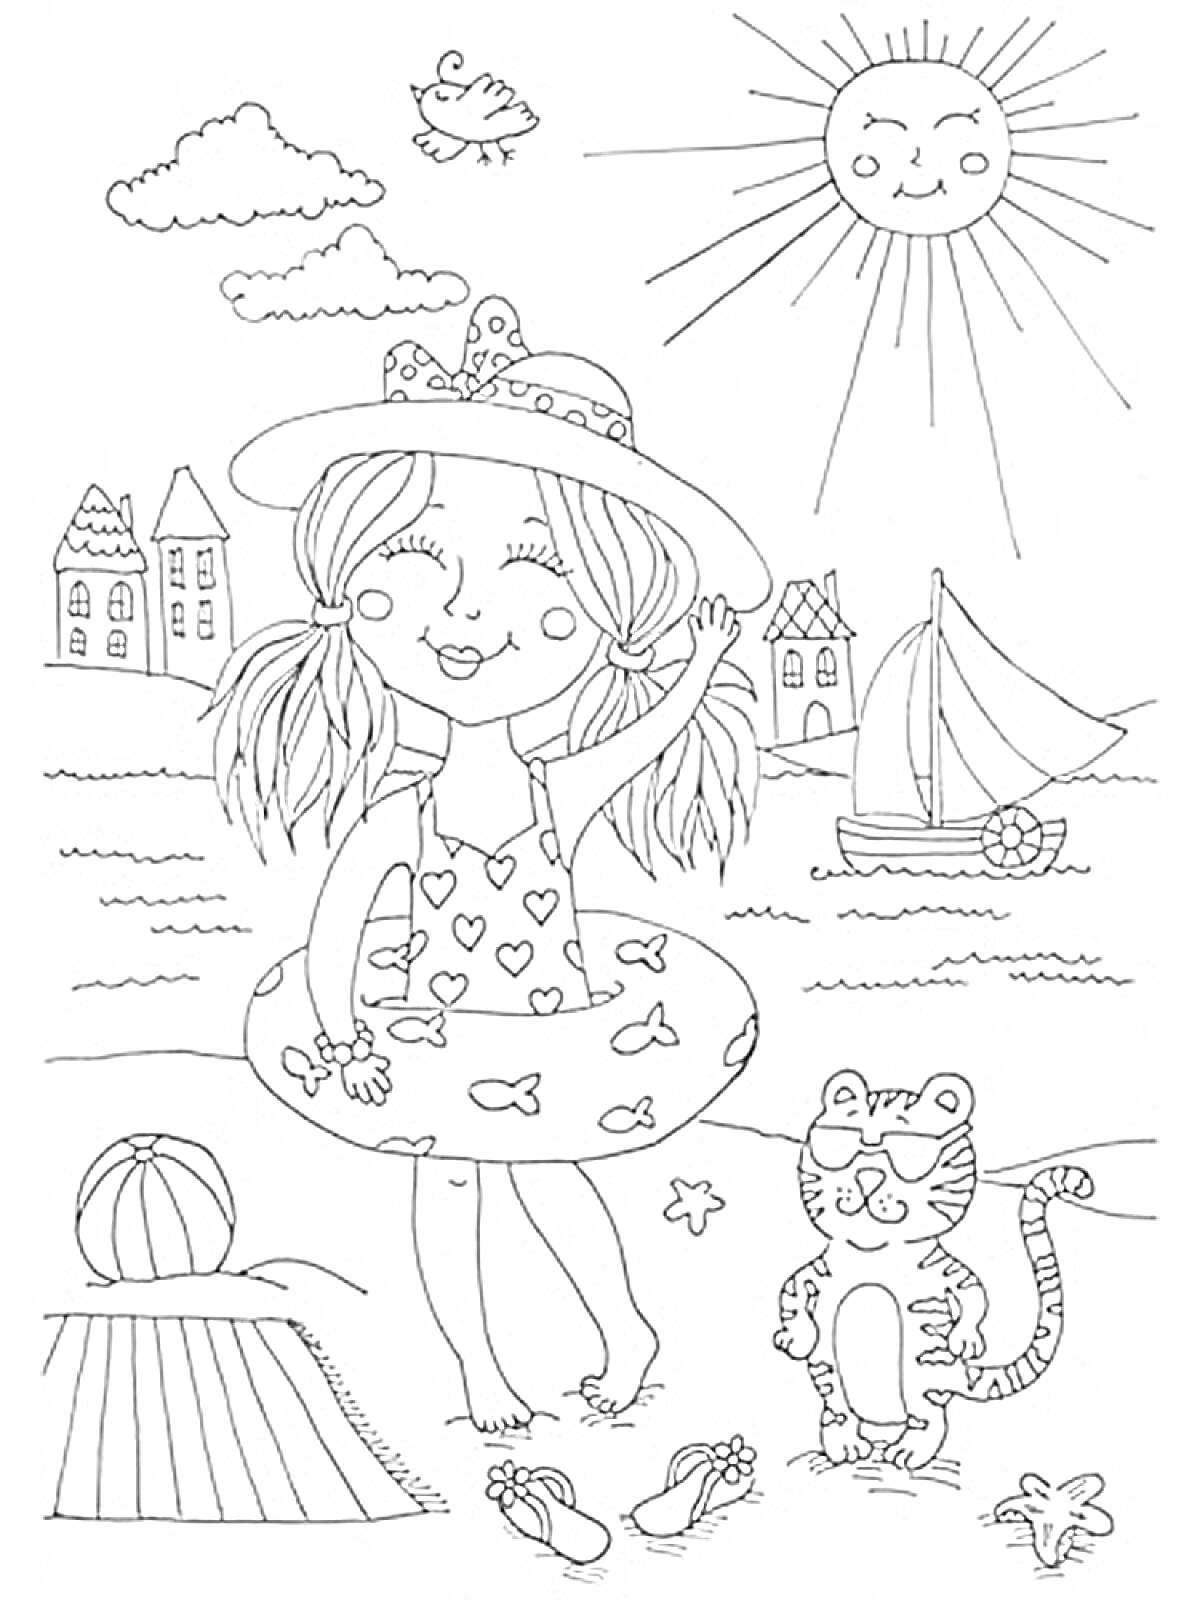 Раскраска Девочка на пляже с котом, корабликом и солнцем